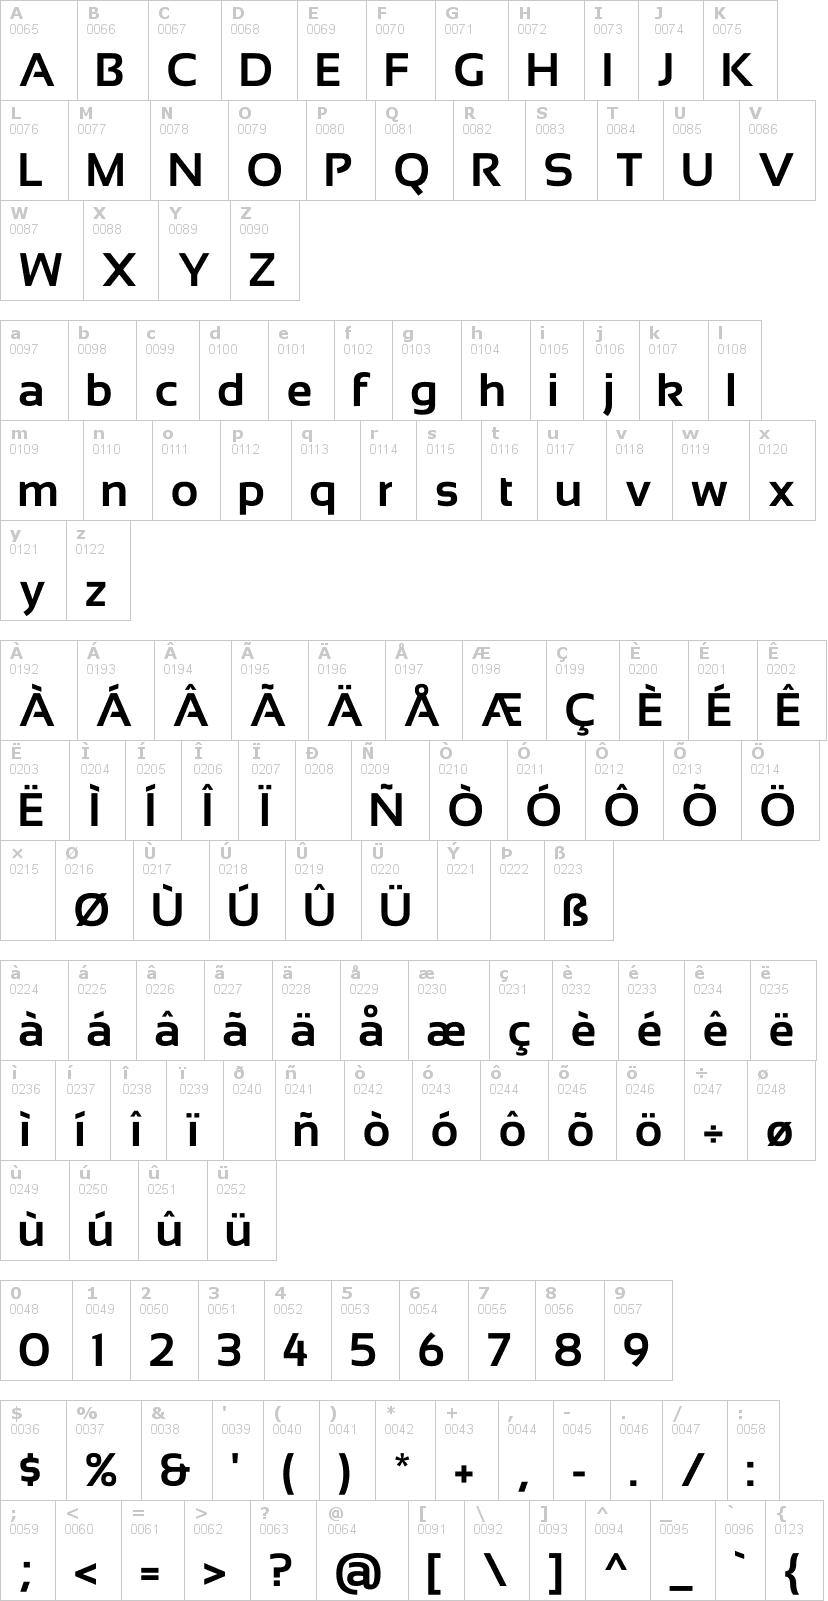 Lettere dell'alfabeto del font sansation con le quali è possibile realizzare adesivi prespaziati